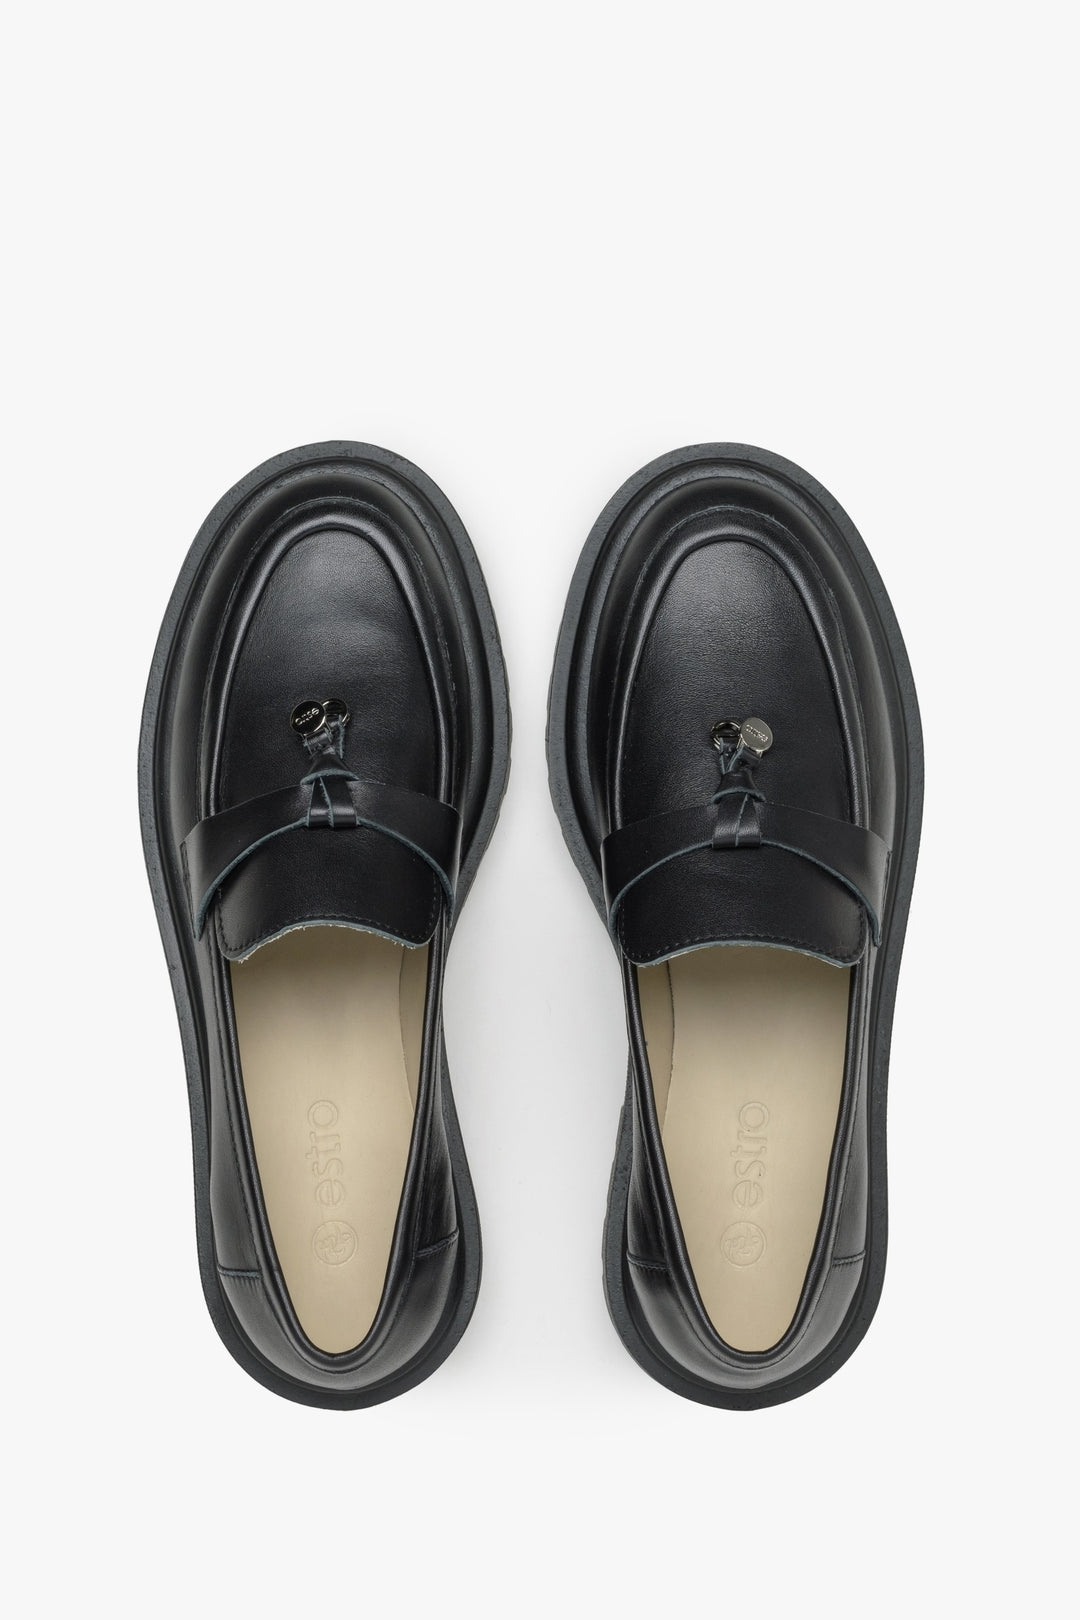 Damskie loafersy slip-on z włoskiej skóry naturalnej w kolorze czarnym - prezentacja modelu z góry.